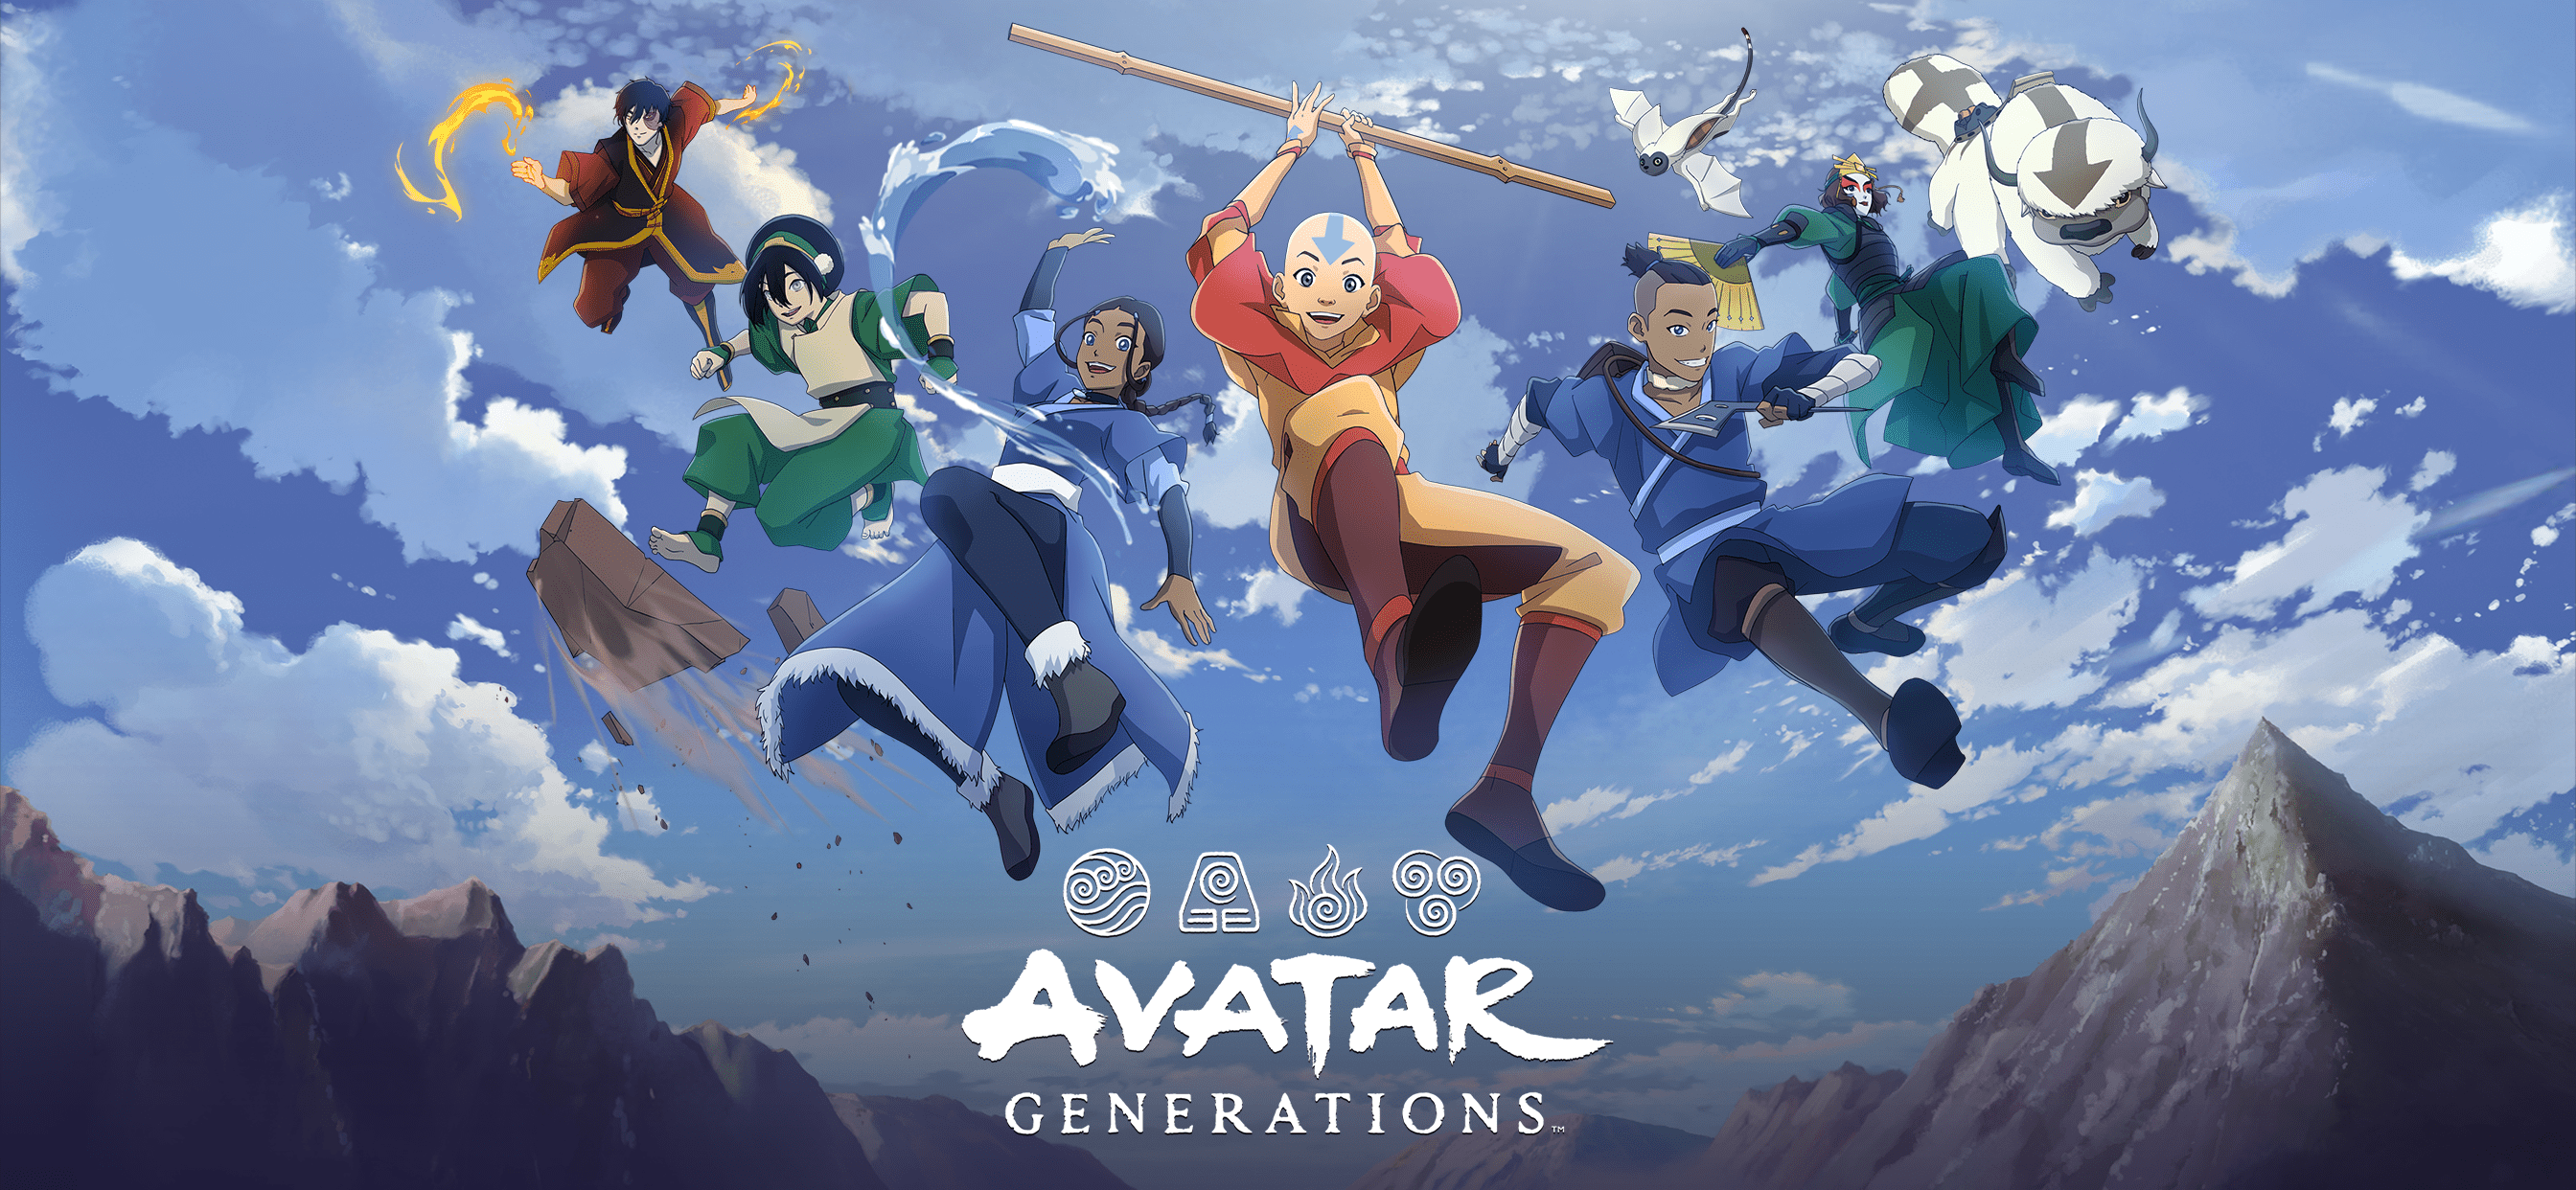 Ya está disponible el prerregistro para Avatar Generations, un juego de rol para móviles basado en el universo de Avatar Aang.